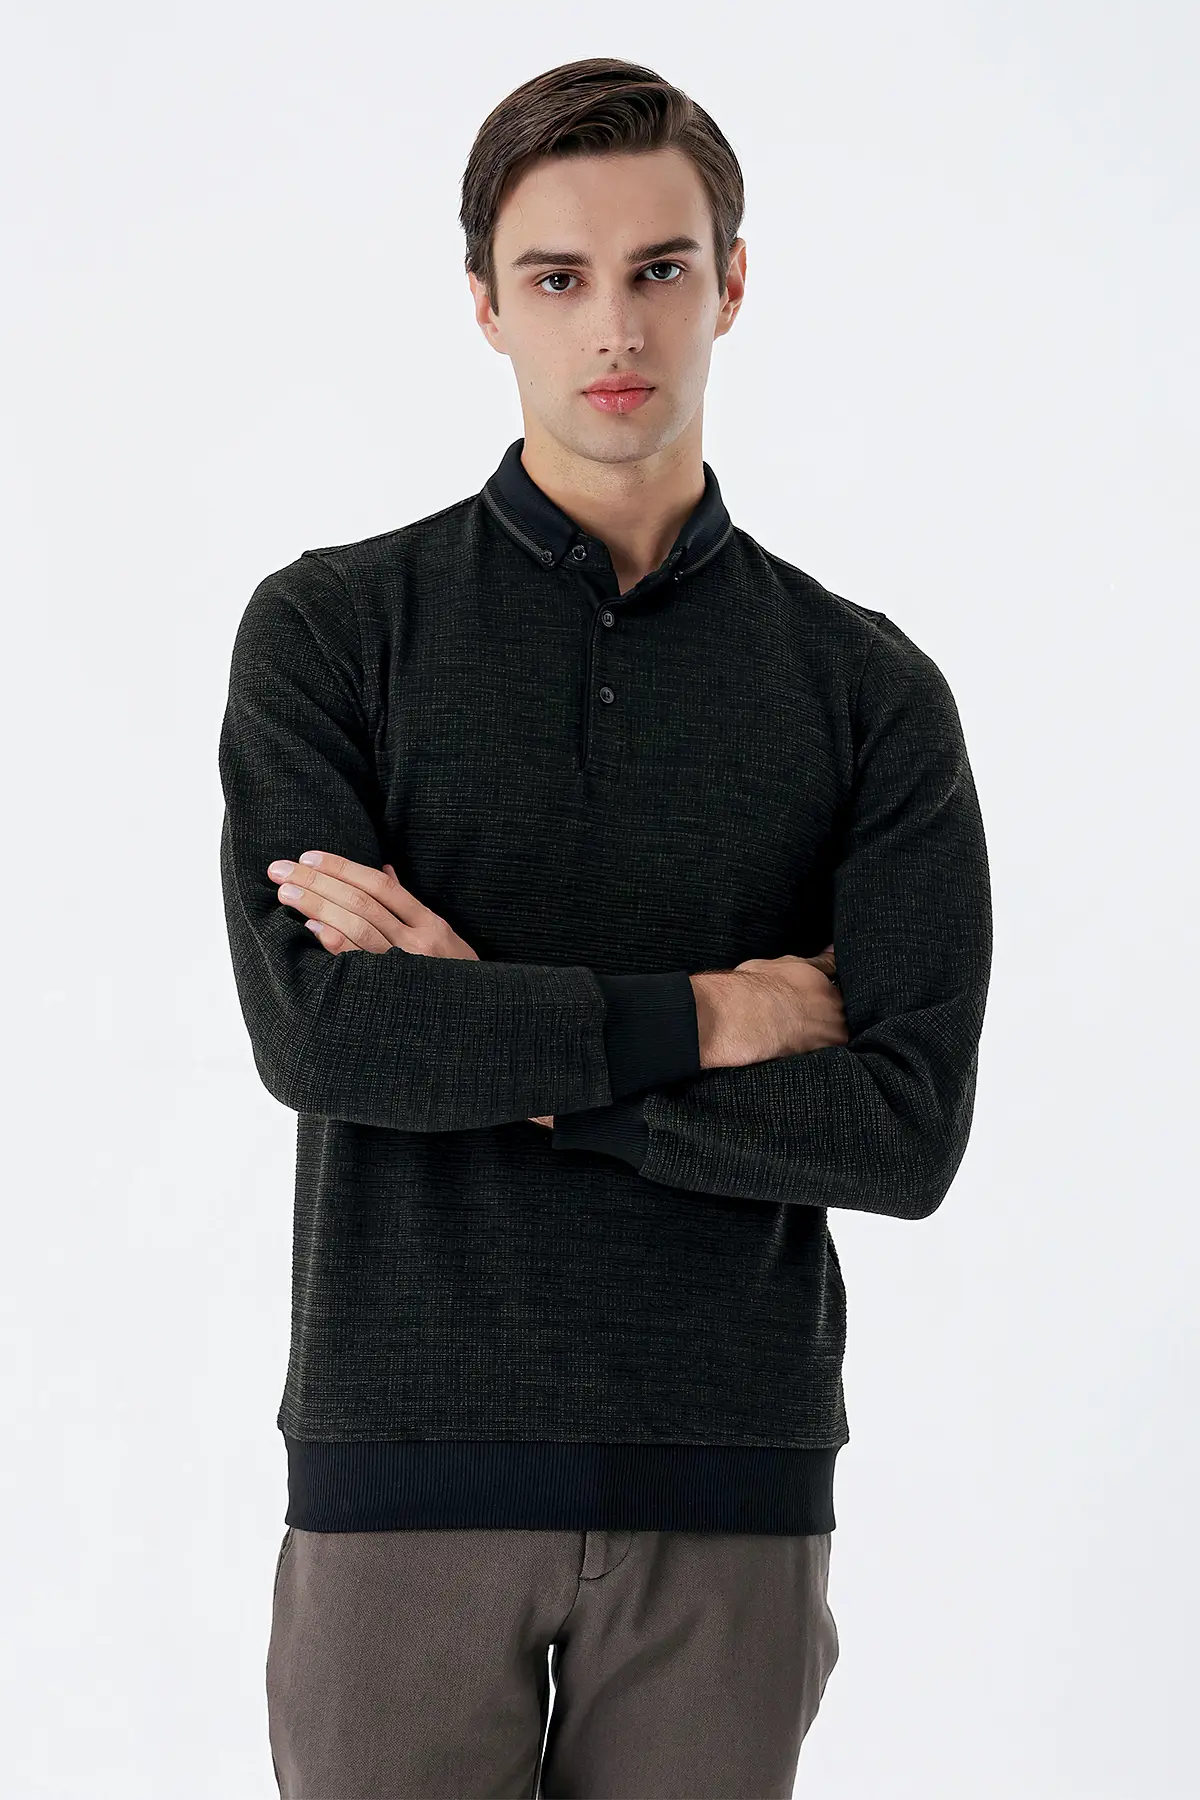 İmza Koyu Haki Uzun Kollu Desenli Örme Polo Yaka Likralı Casual Comfort Fit Sweatshirt 1013235106. 1